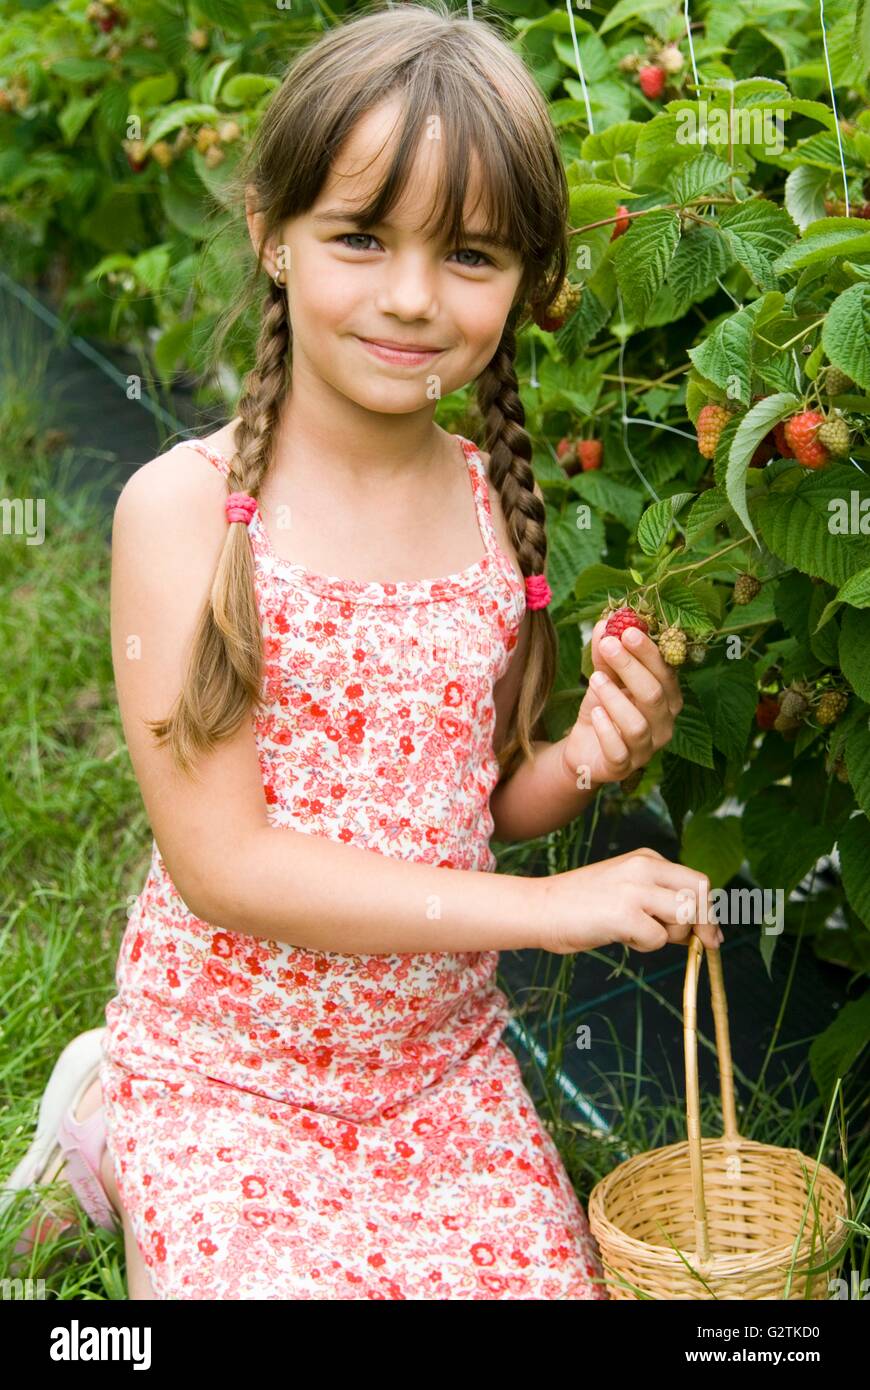 Girl picking raspberries Stock Photo